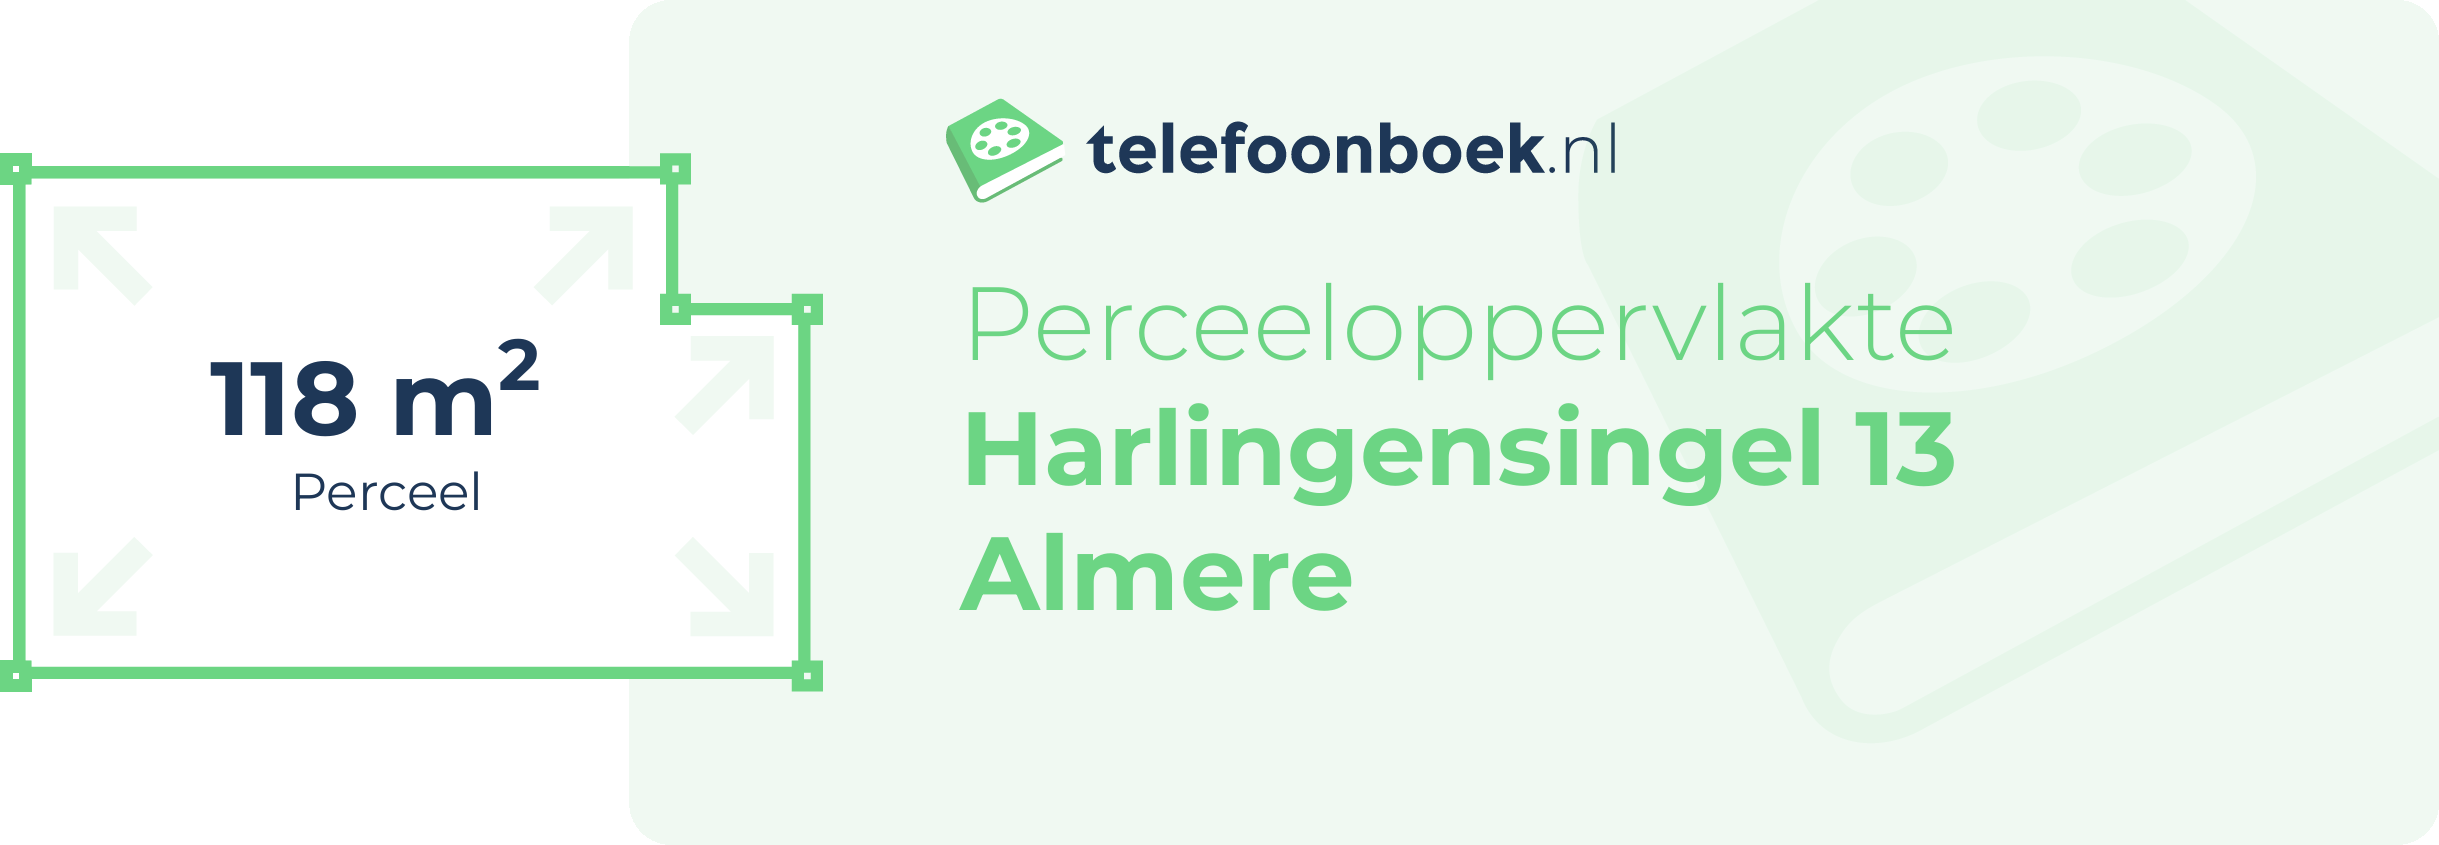 Perceeloppervlakte Harlingensingel 13 Almere